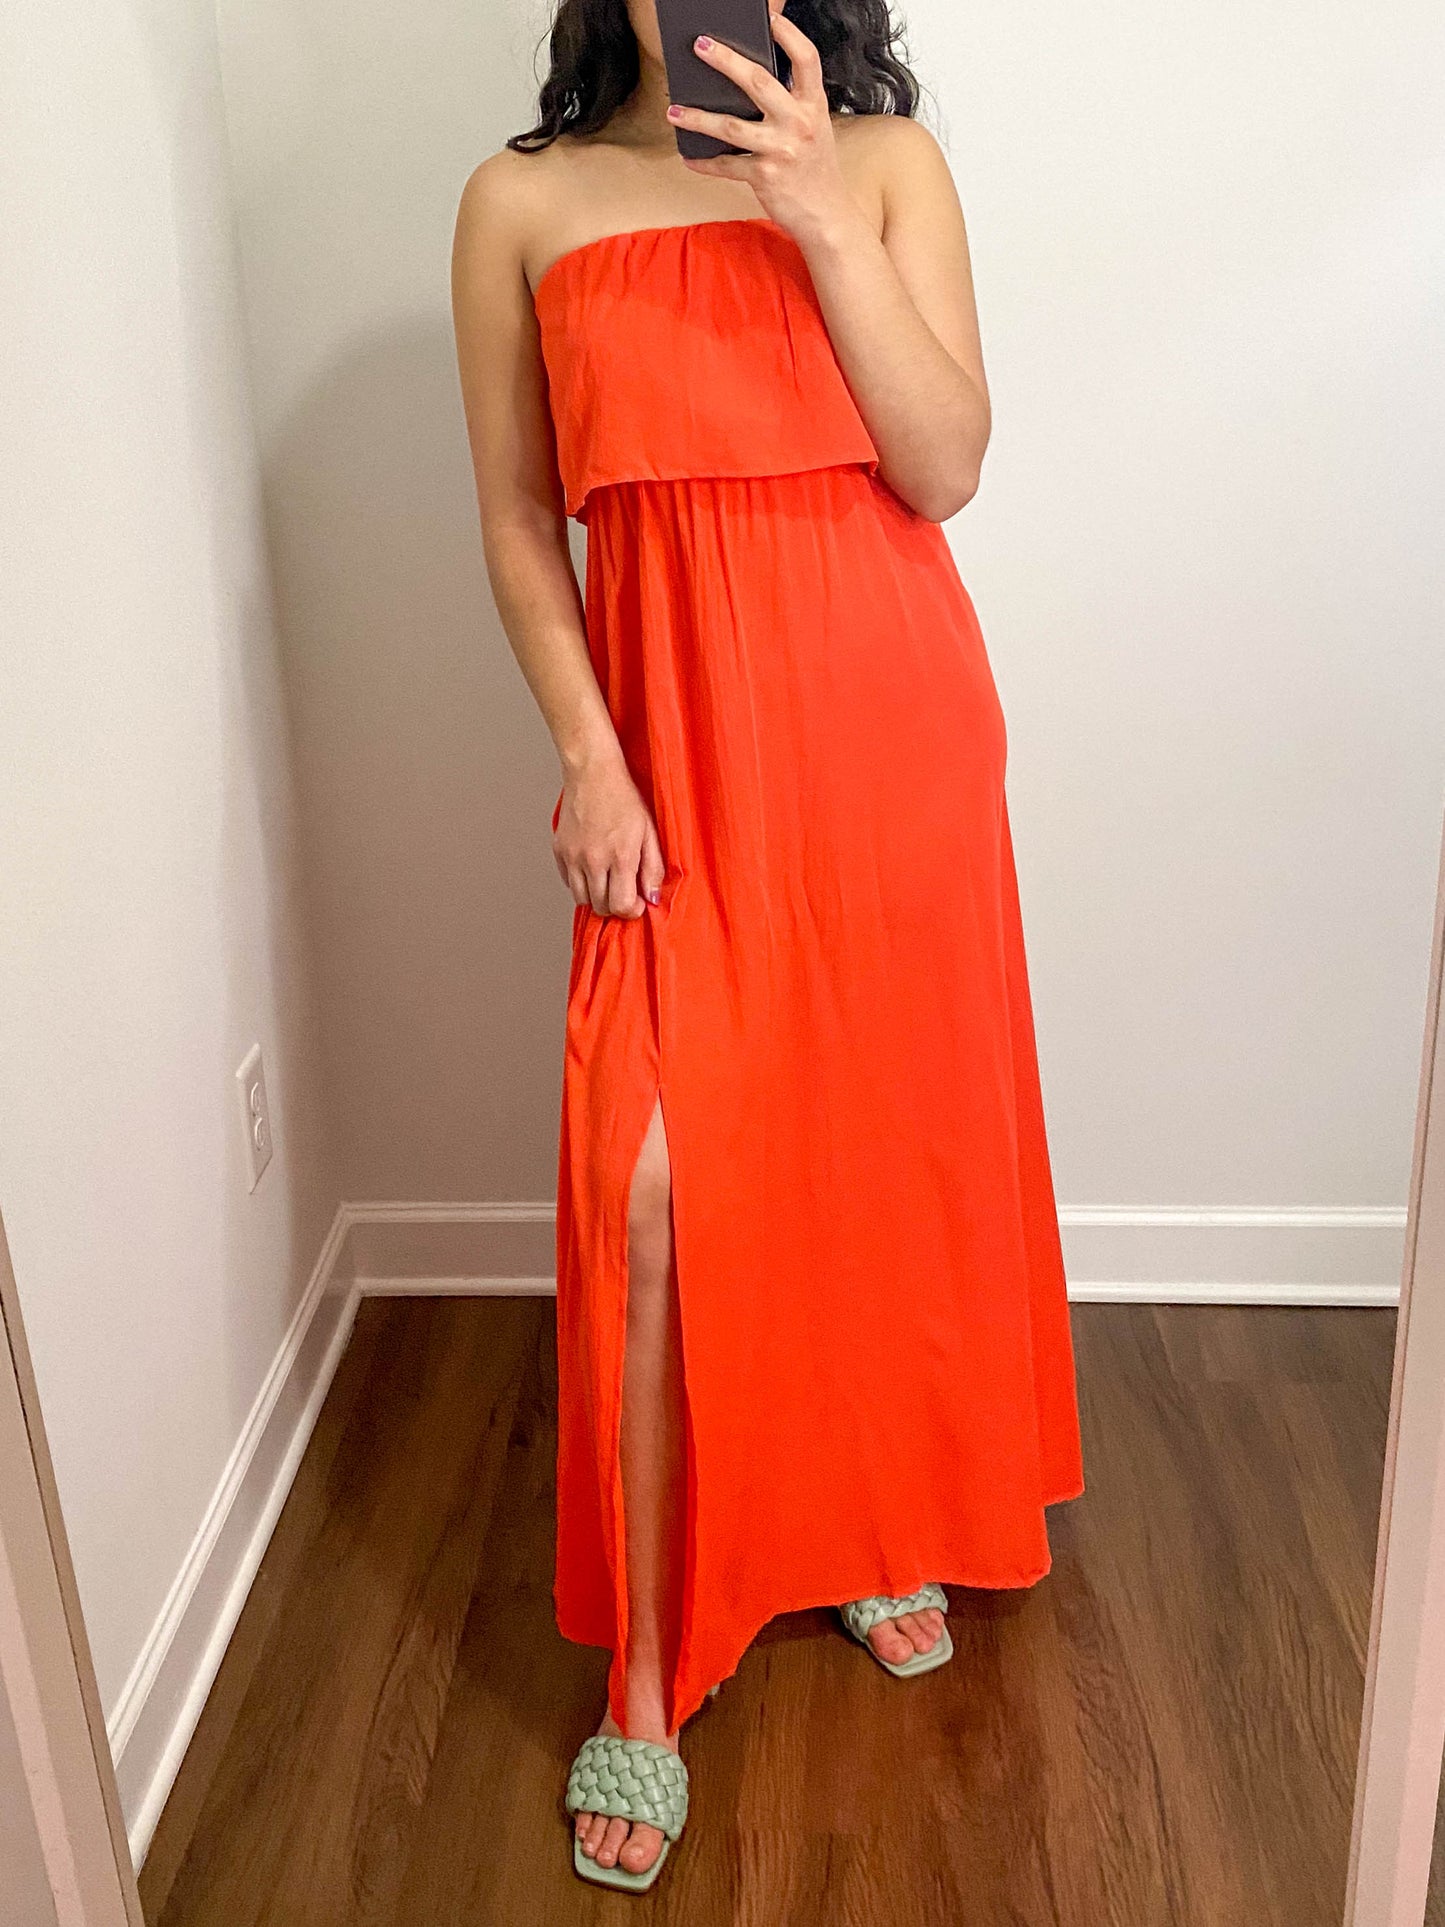 Orange Strapless Woven Maxi Dress